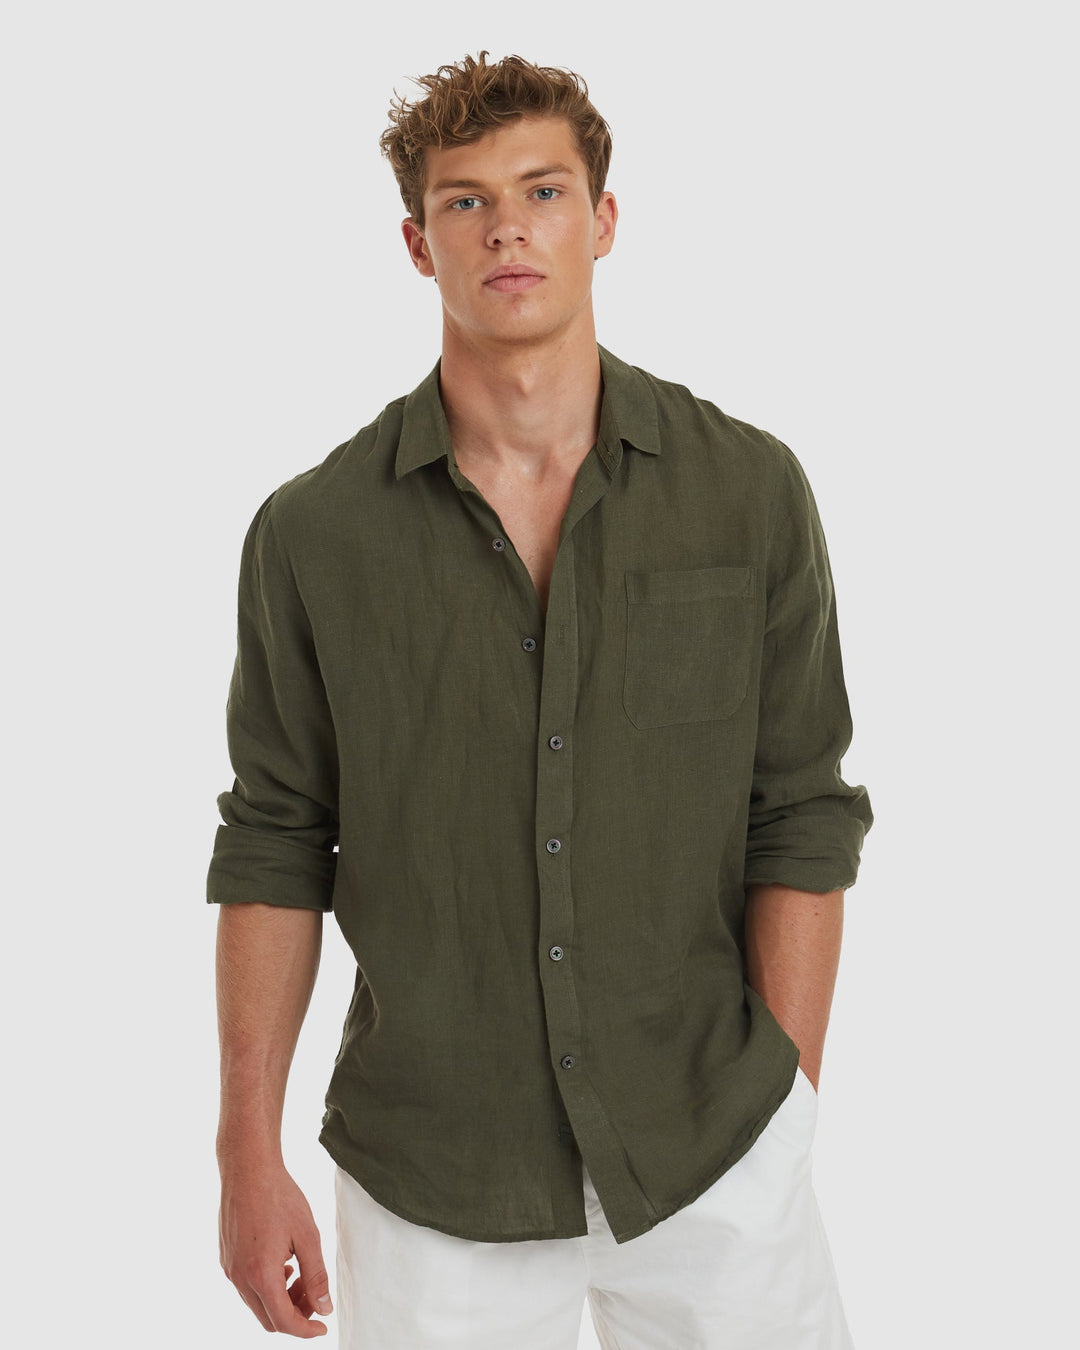 Tulum-Slim Green Linen Shirt Long Sleeve